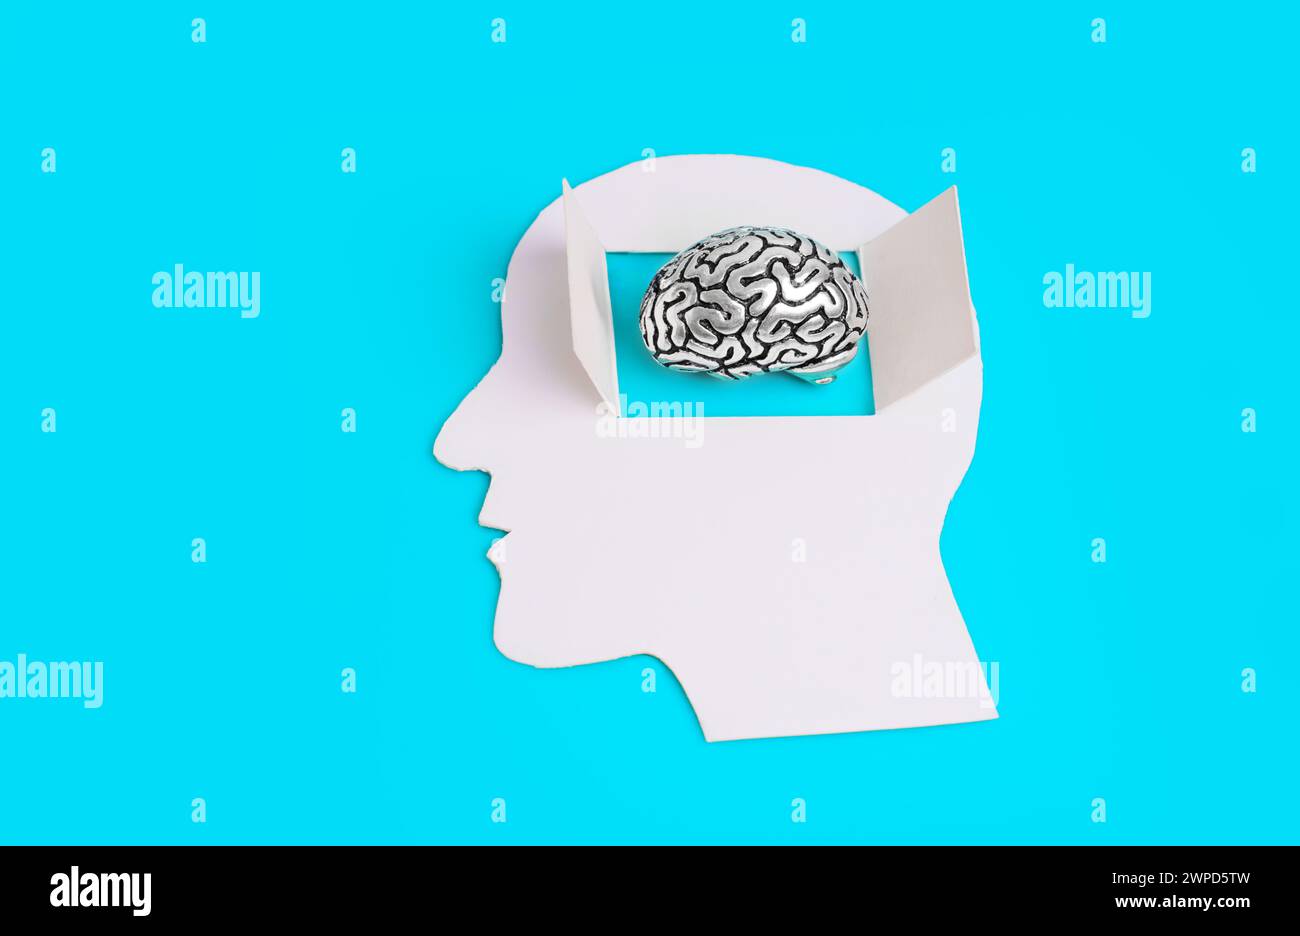 Fessura di carta con testa maschio con una finestra aperta, che mostra un modello cerebrale in acciaio miniaturizzato. Concetto correlato alla mente aperta. Foto Stock